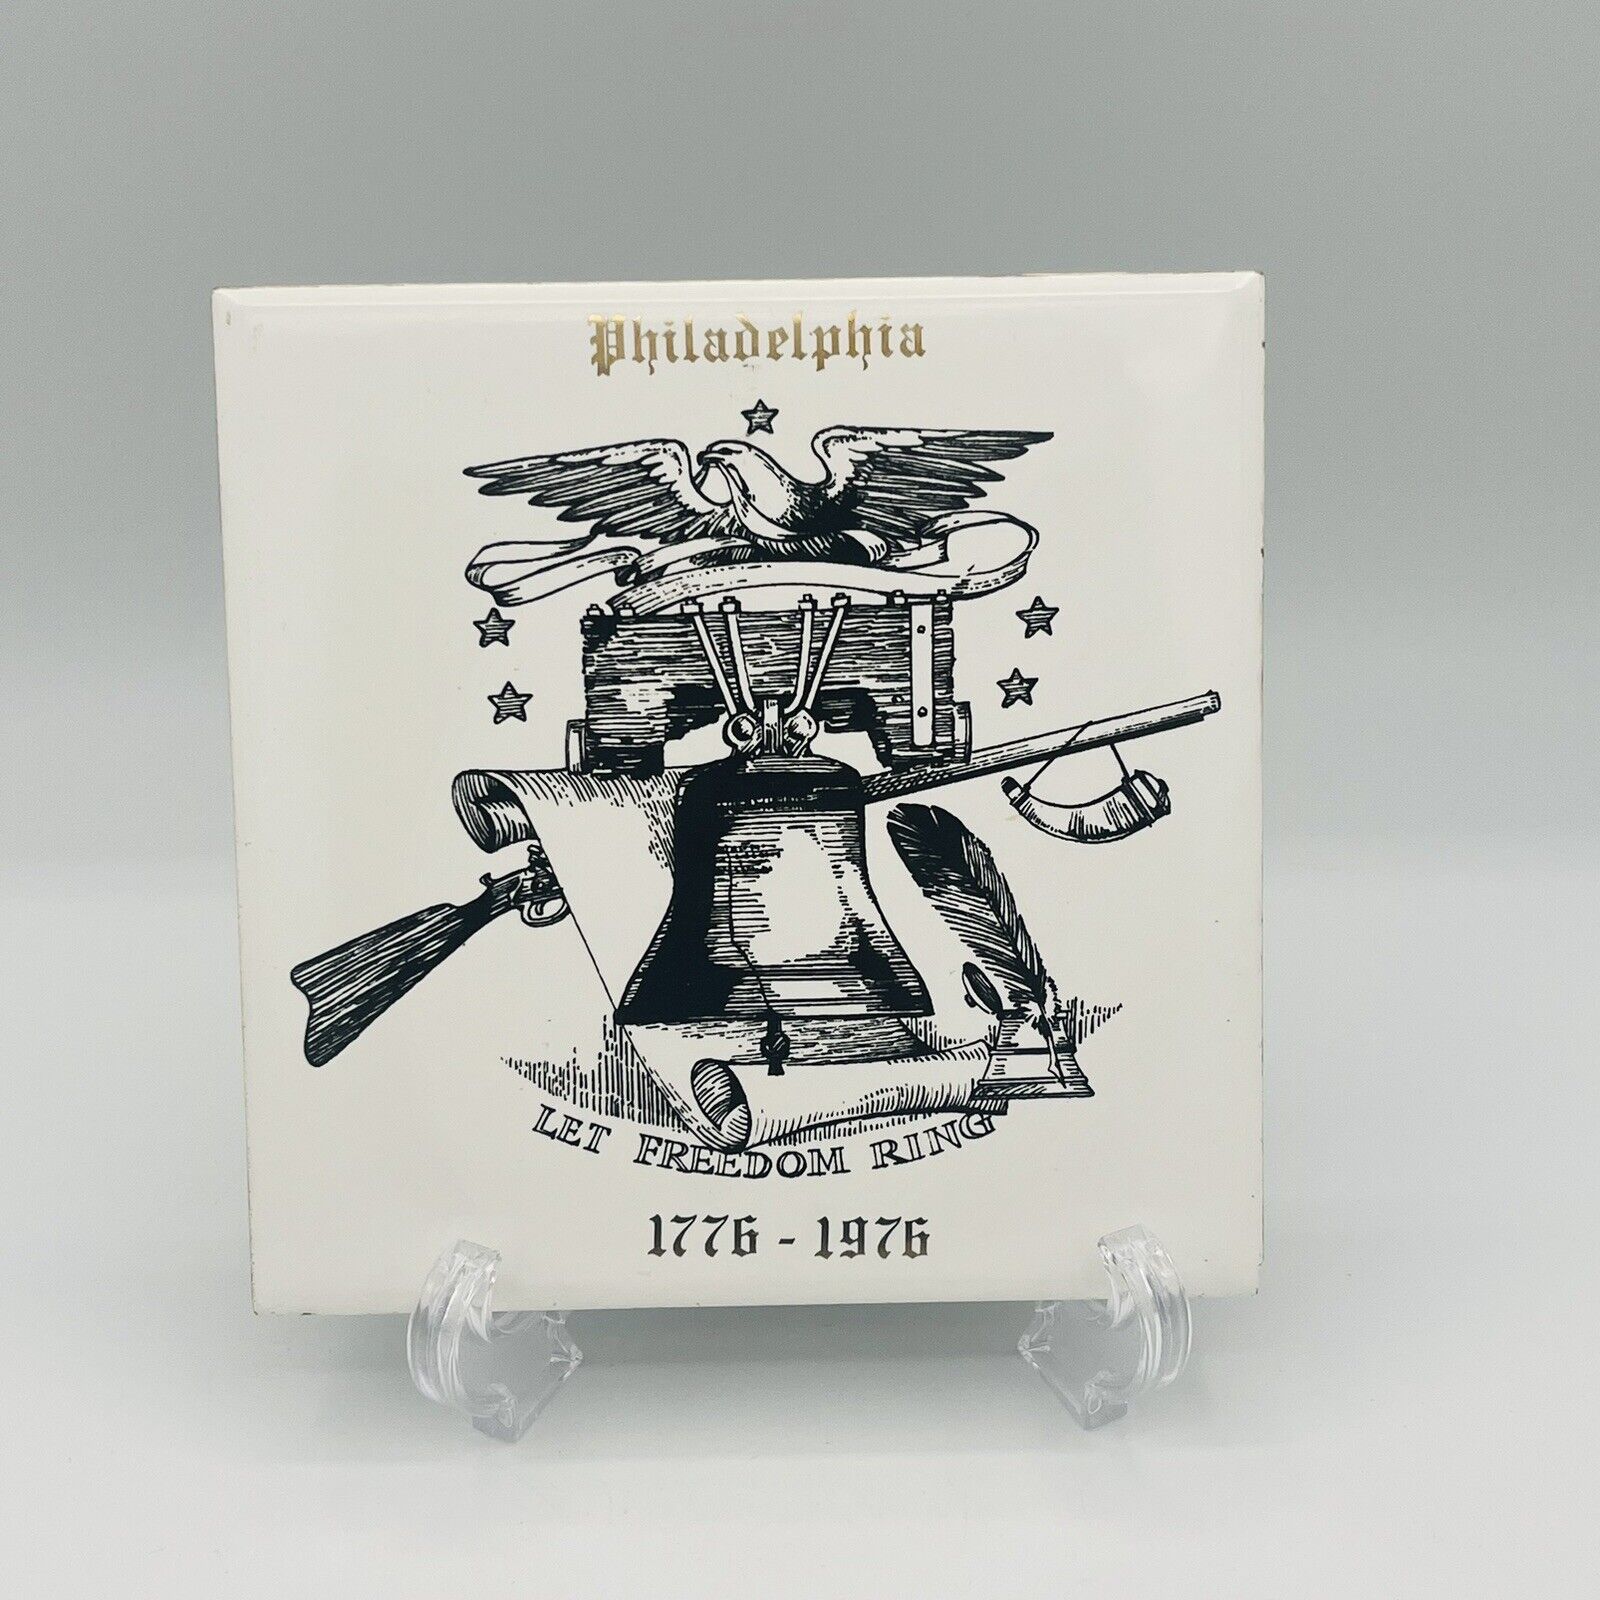 Philadelphia “Let Freedom Ring” Liberty Bell Vintage Ceramic Tile/Trivet